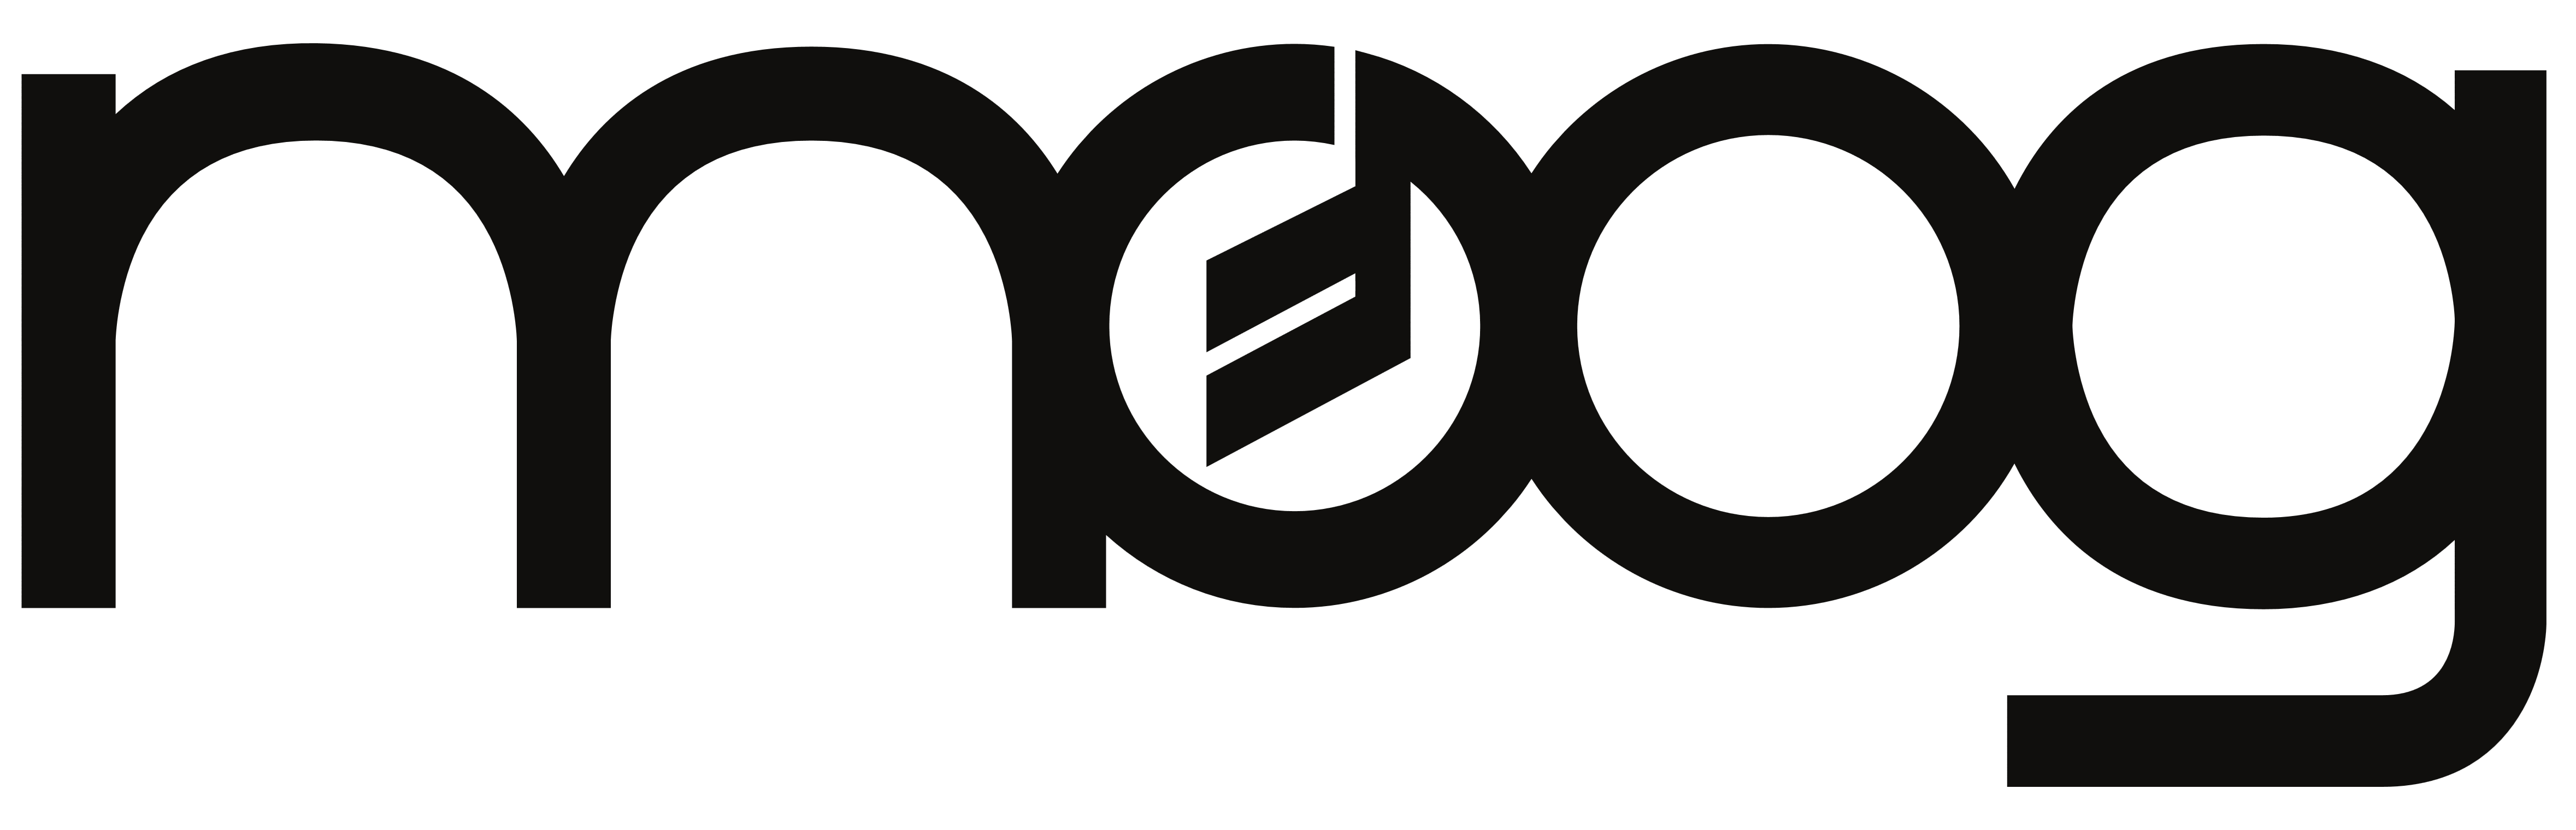 Moog Music – Logos Download